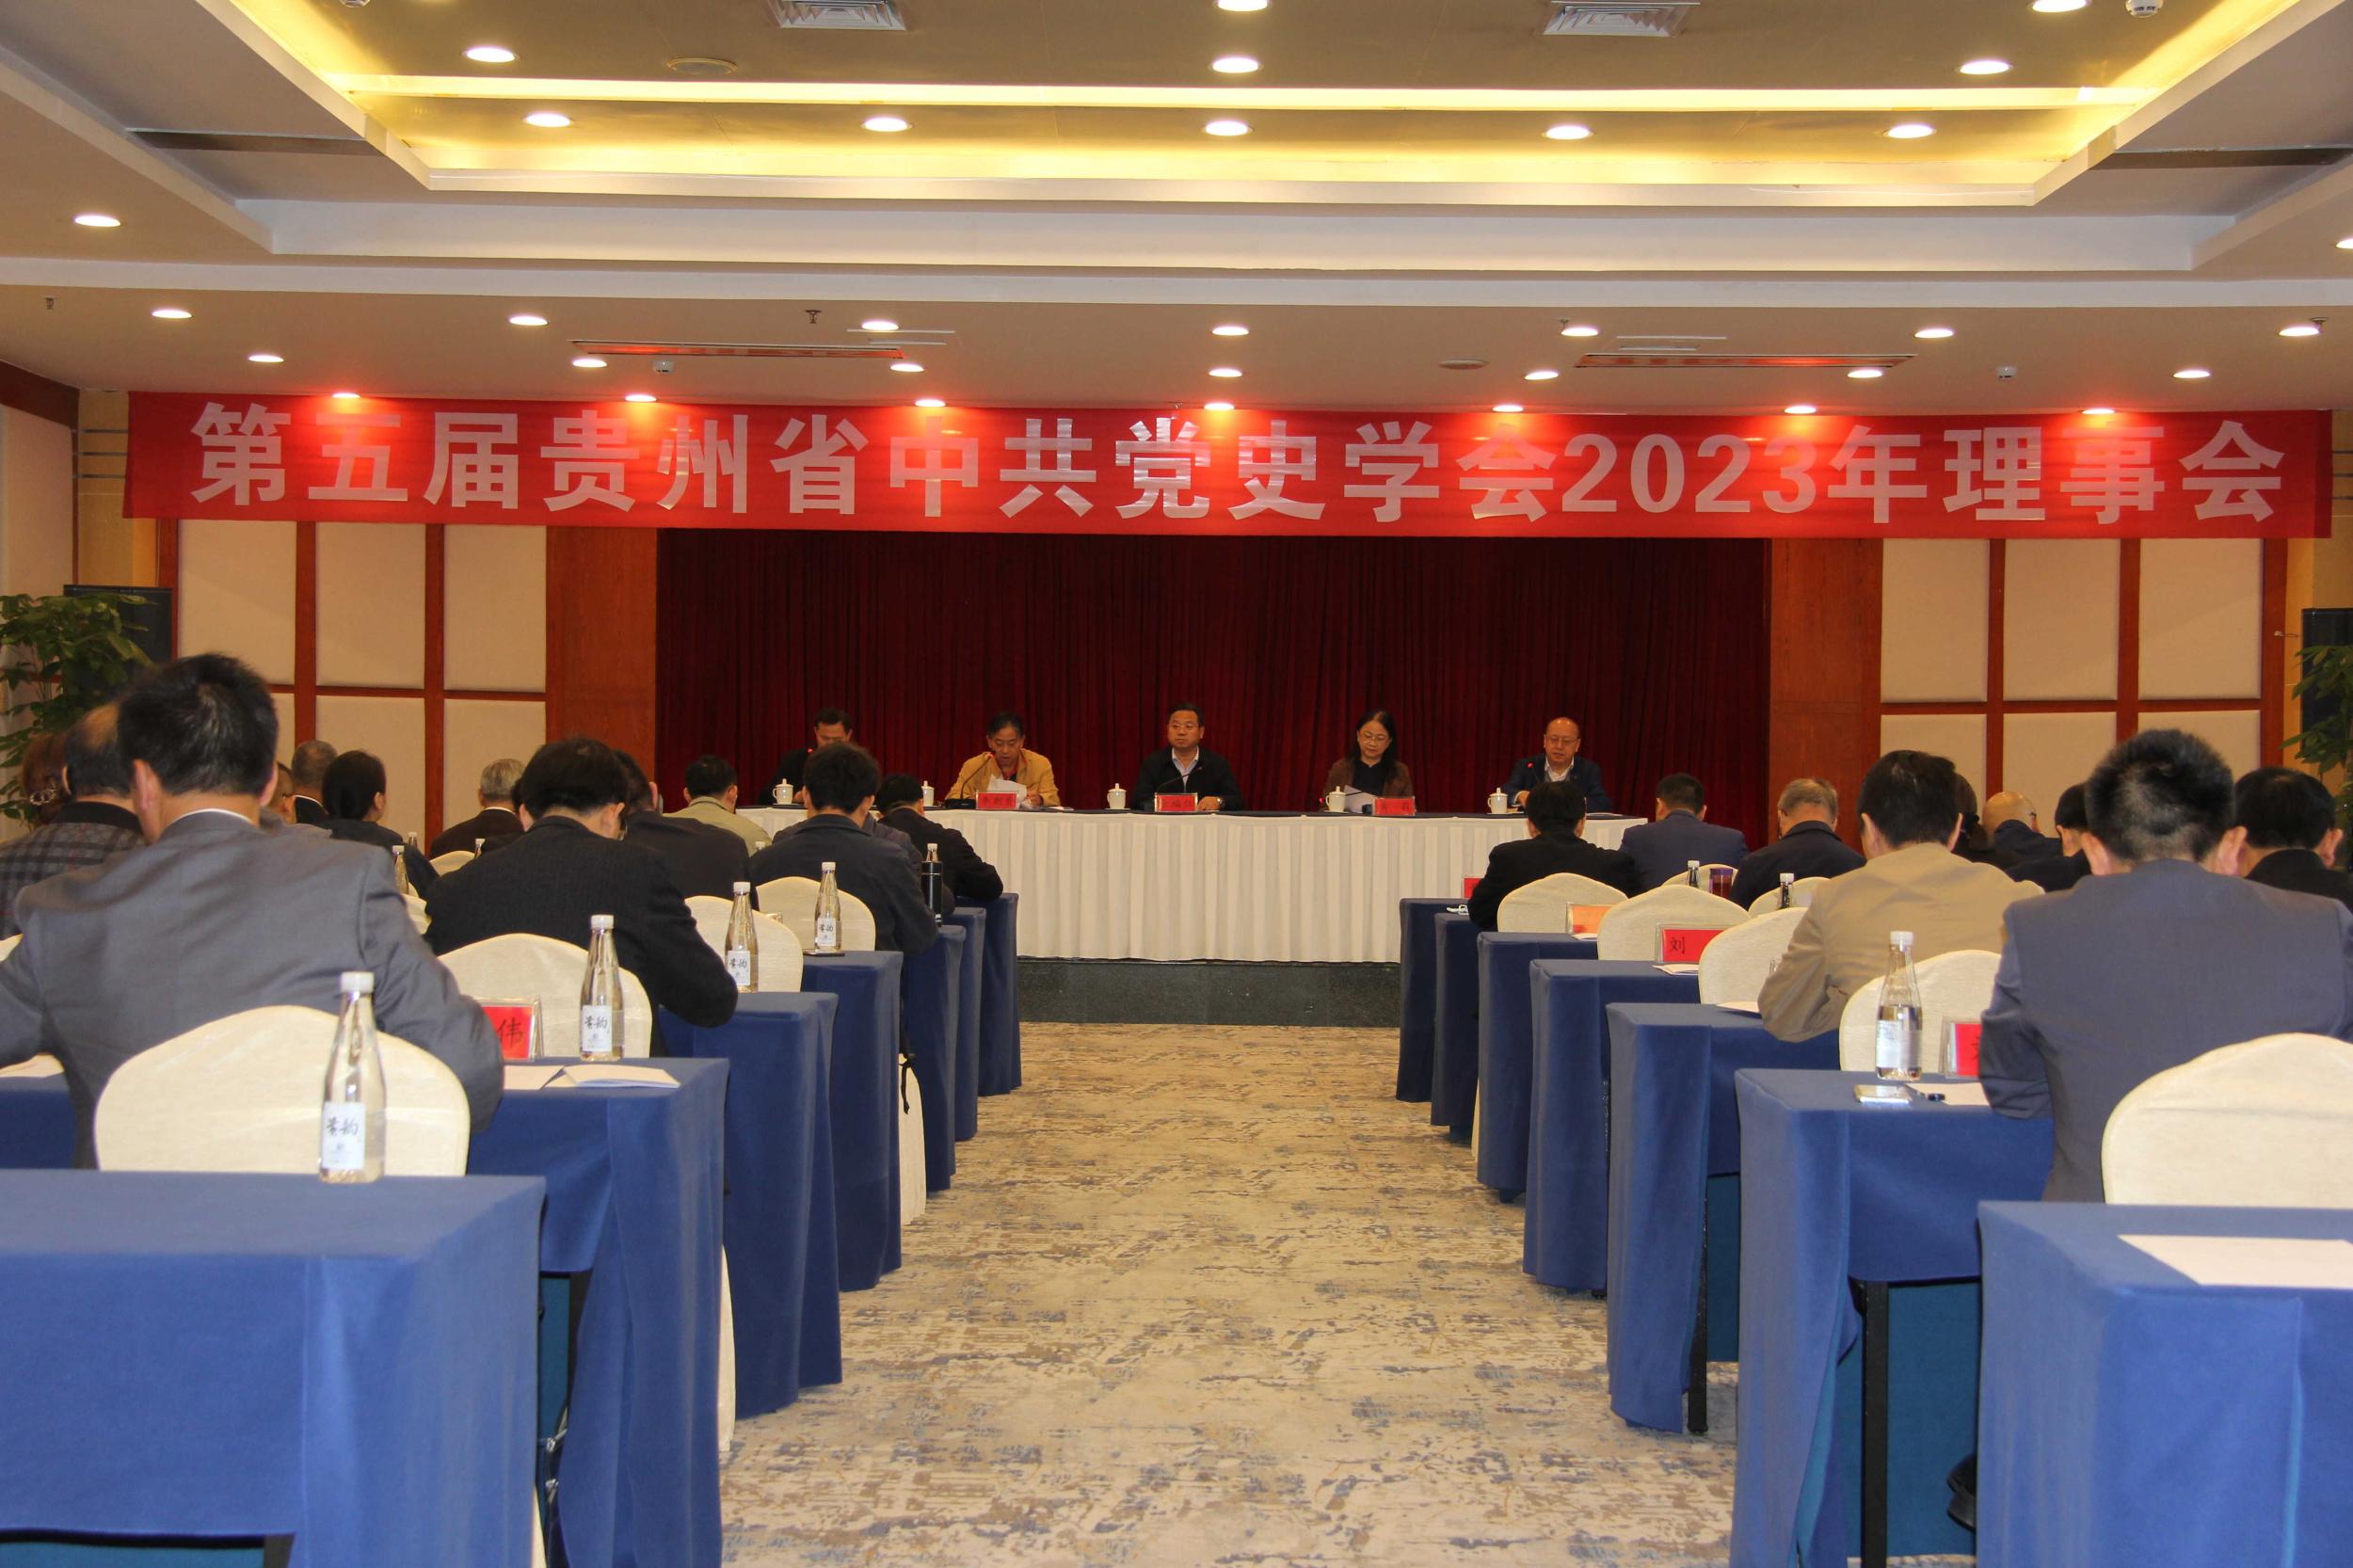 贵州省中共党史学会2023年理事会在贵阳召开